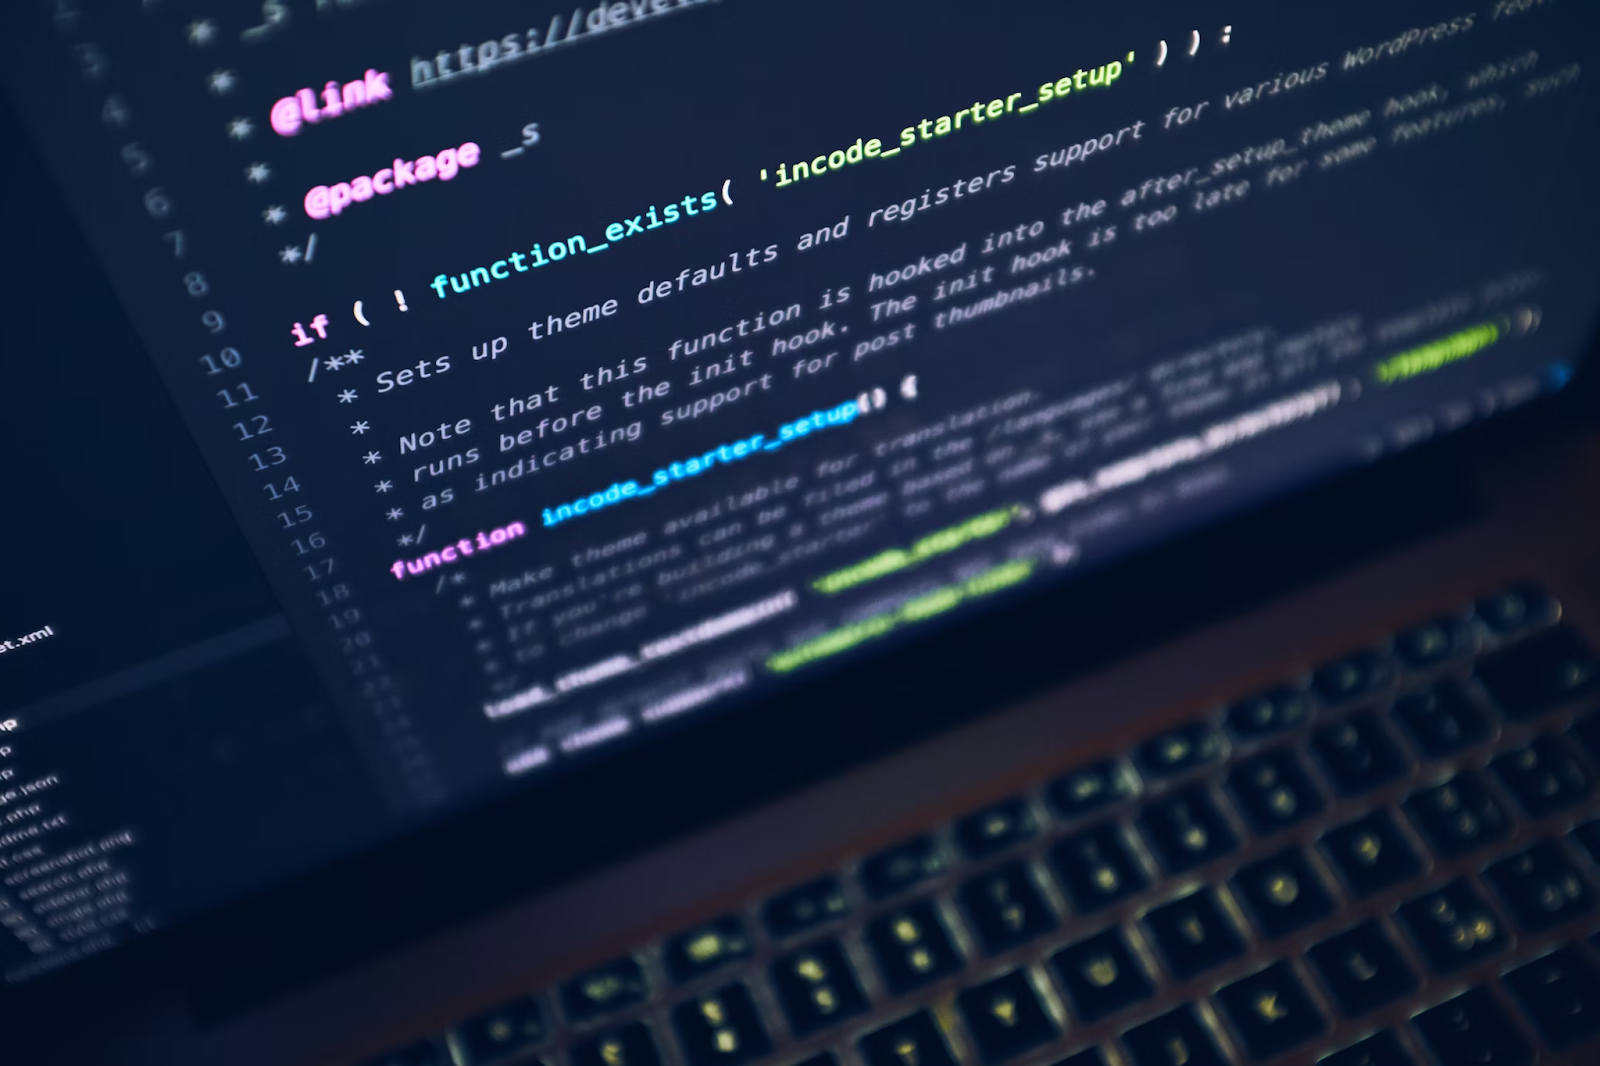 Tela de um laptop mostrando um código escrito em uma linguagem de programação. O código parece ser parte de um programa de computador, com várias linhas de texto exibidas na tela.